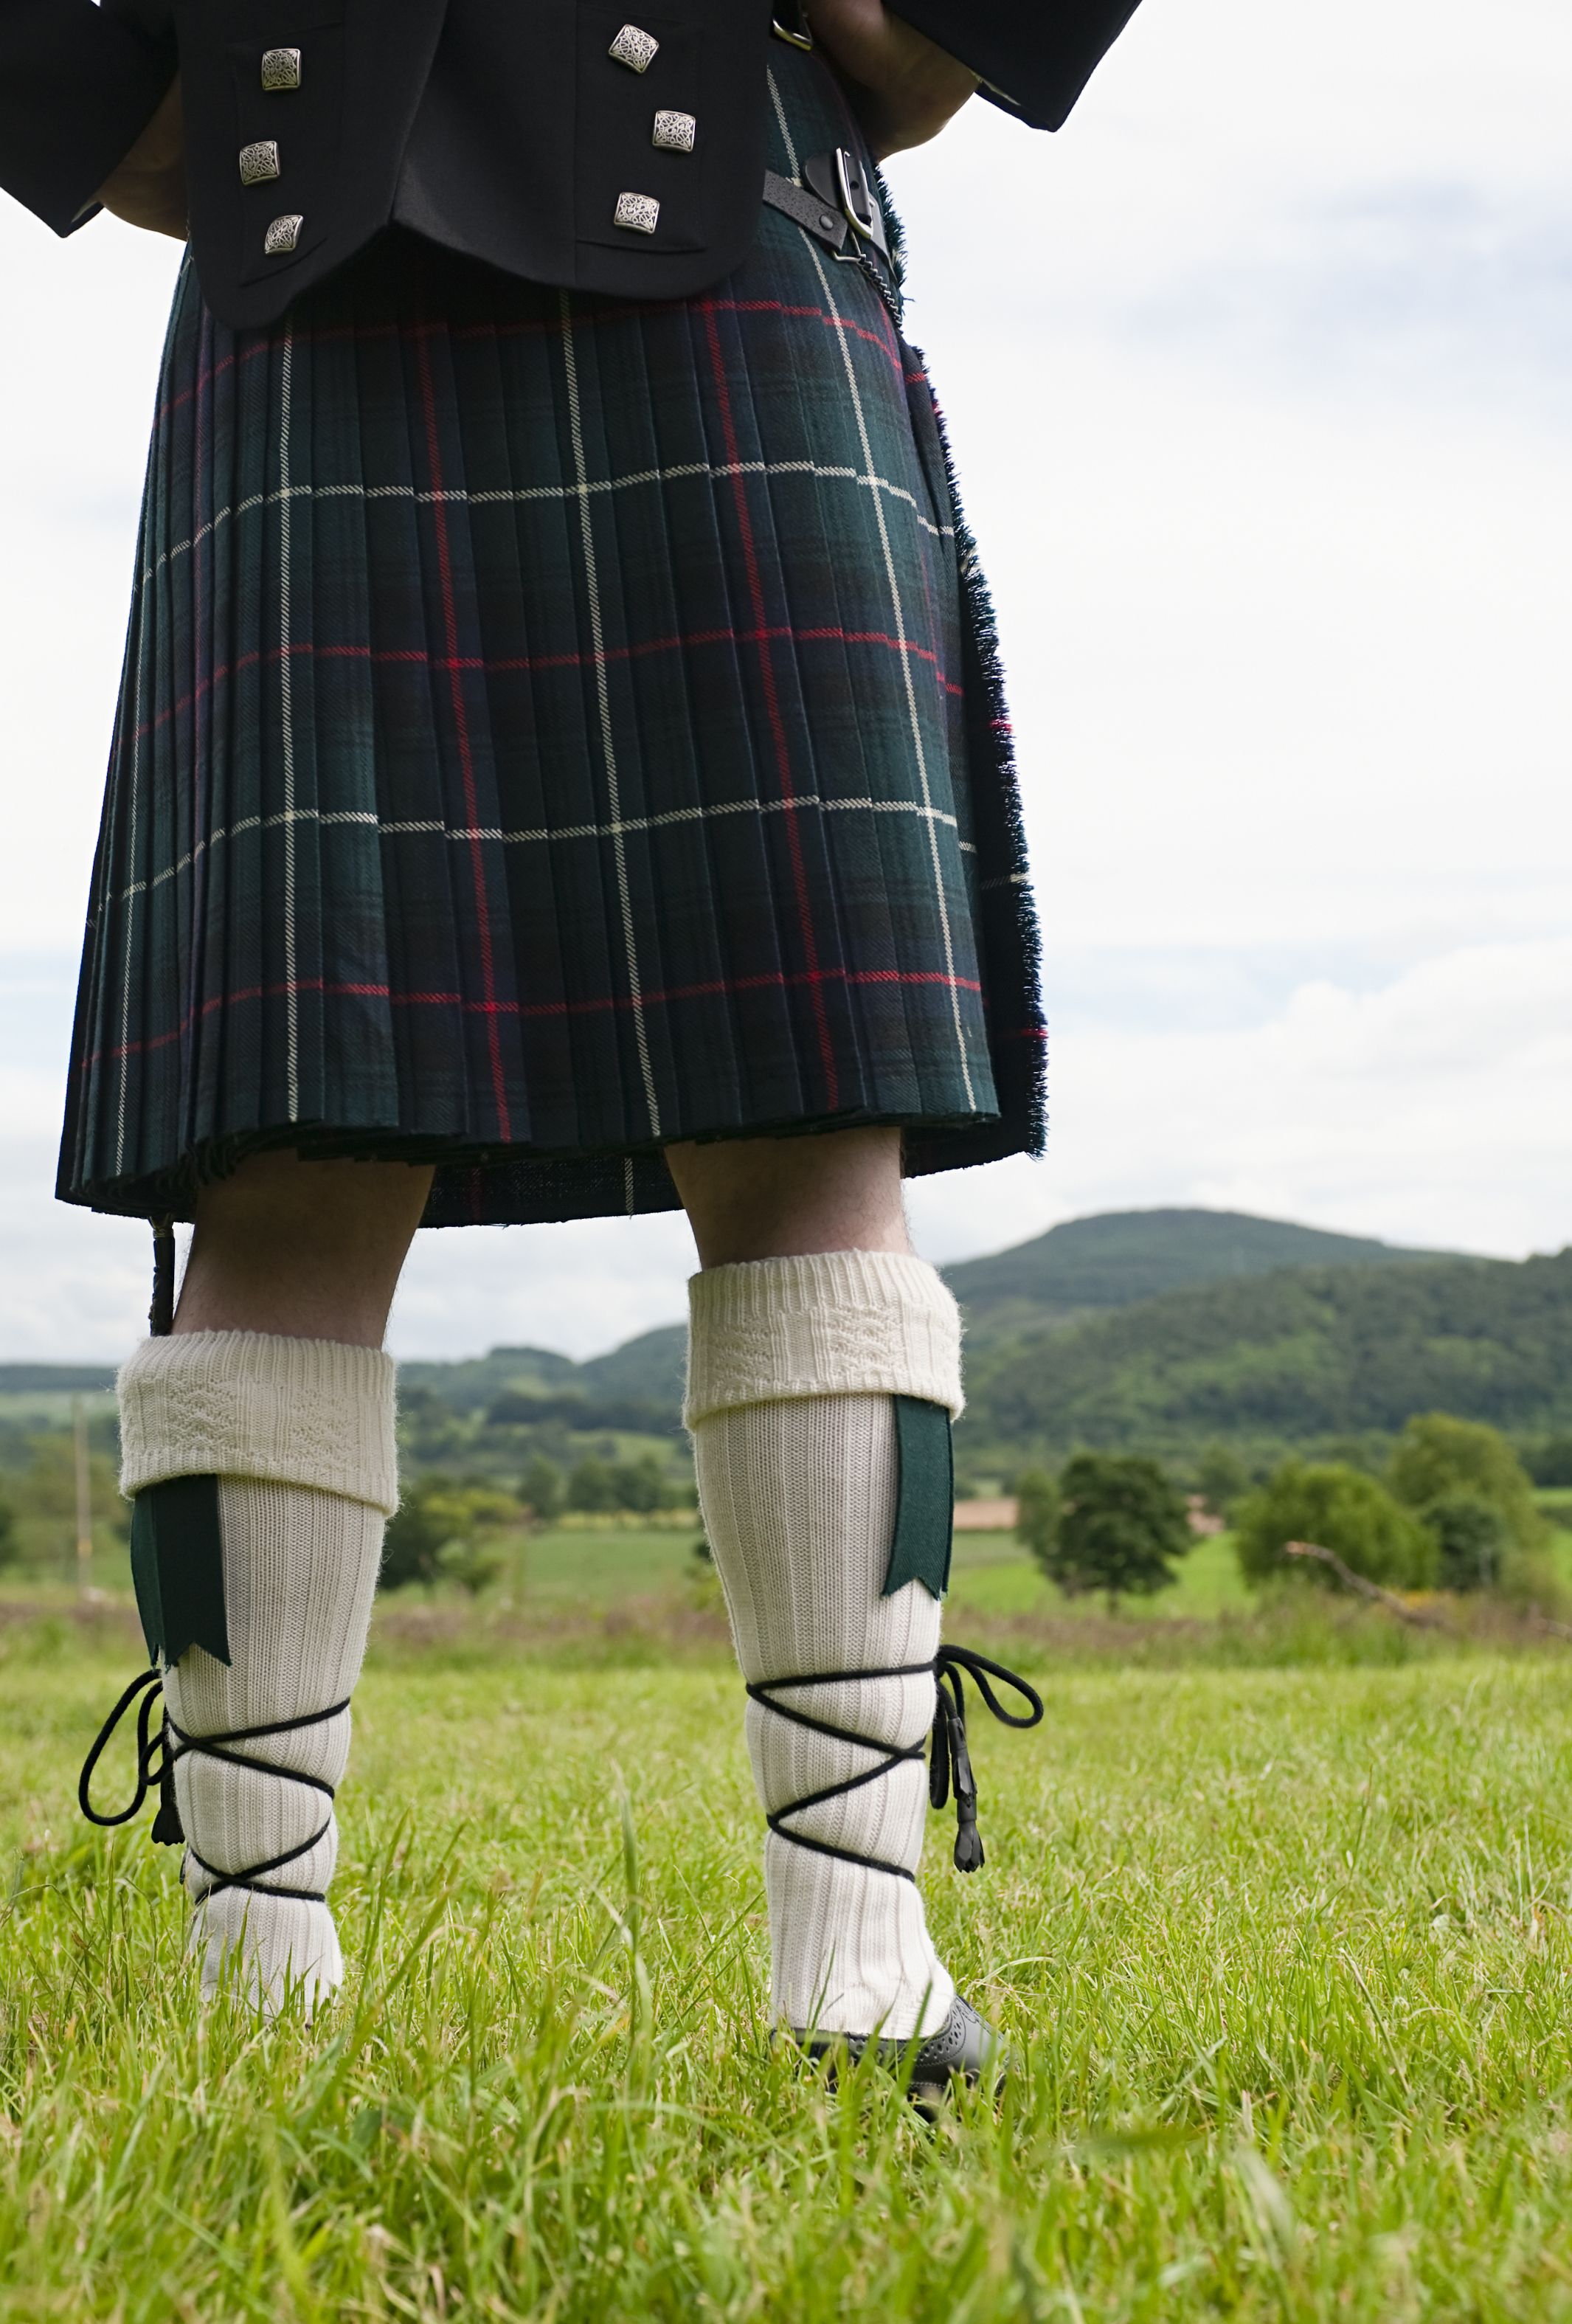 Il kilt scozzese: dalla sua versione piu romantica alla modernità- immagine 4